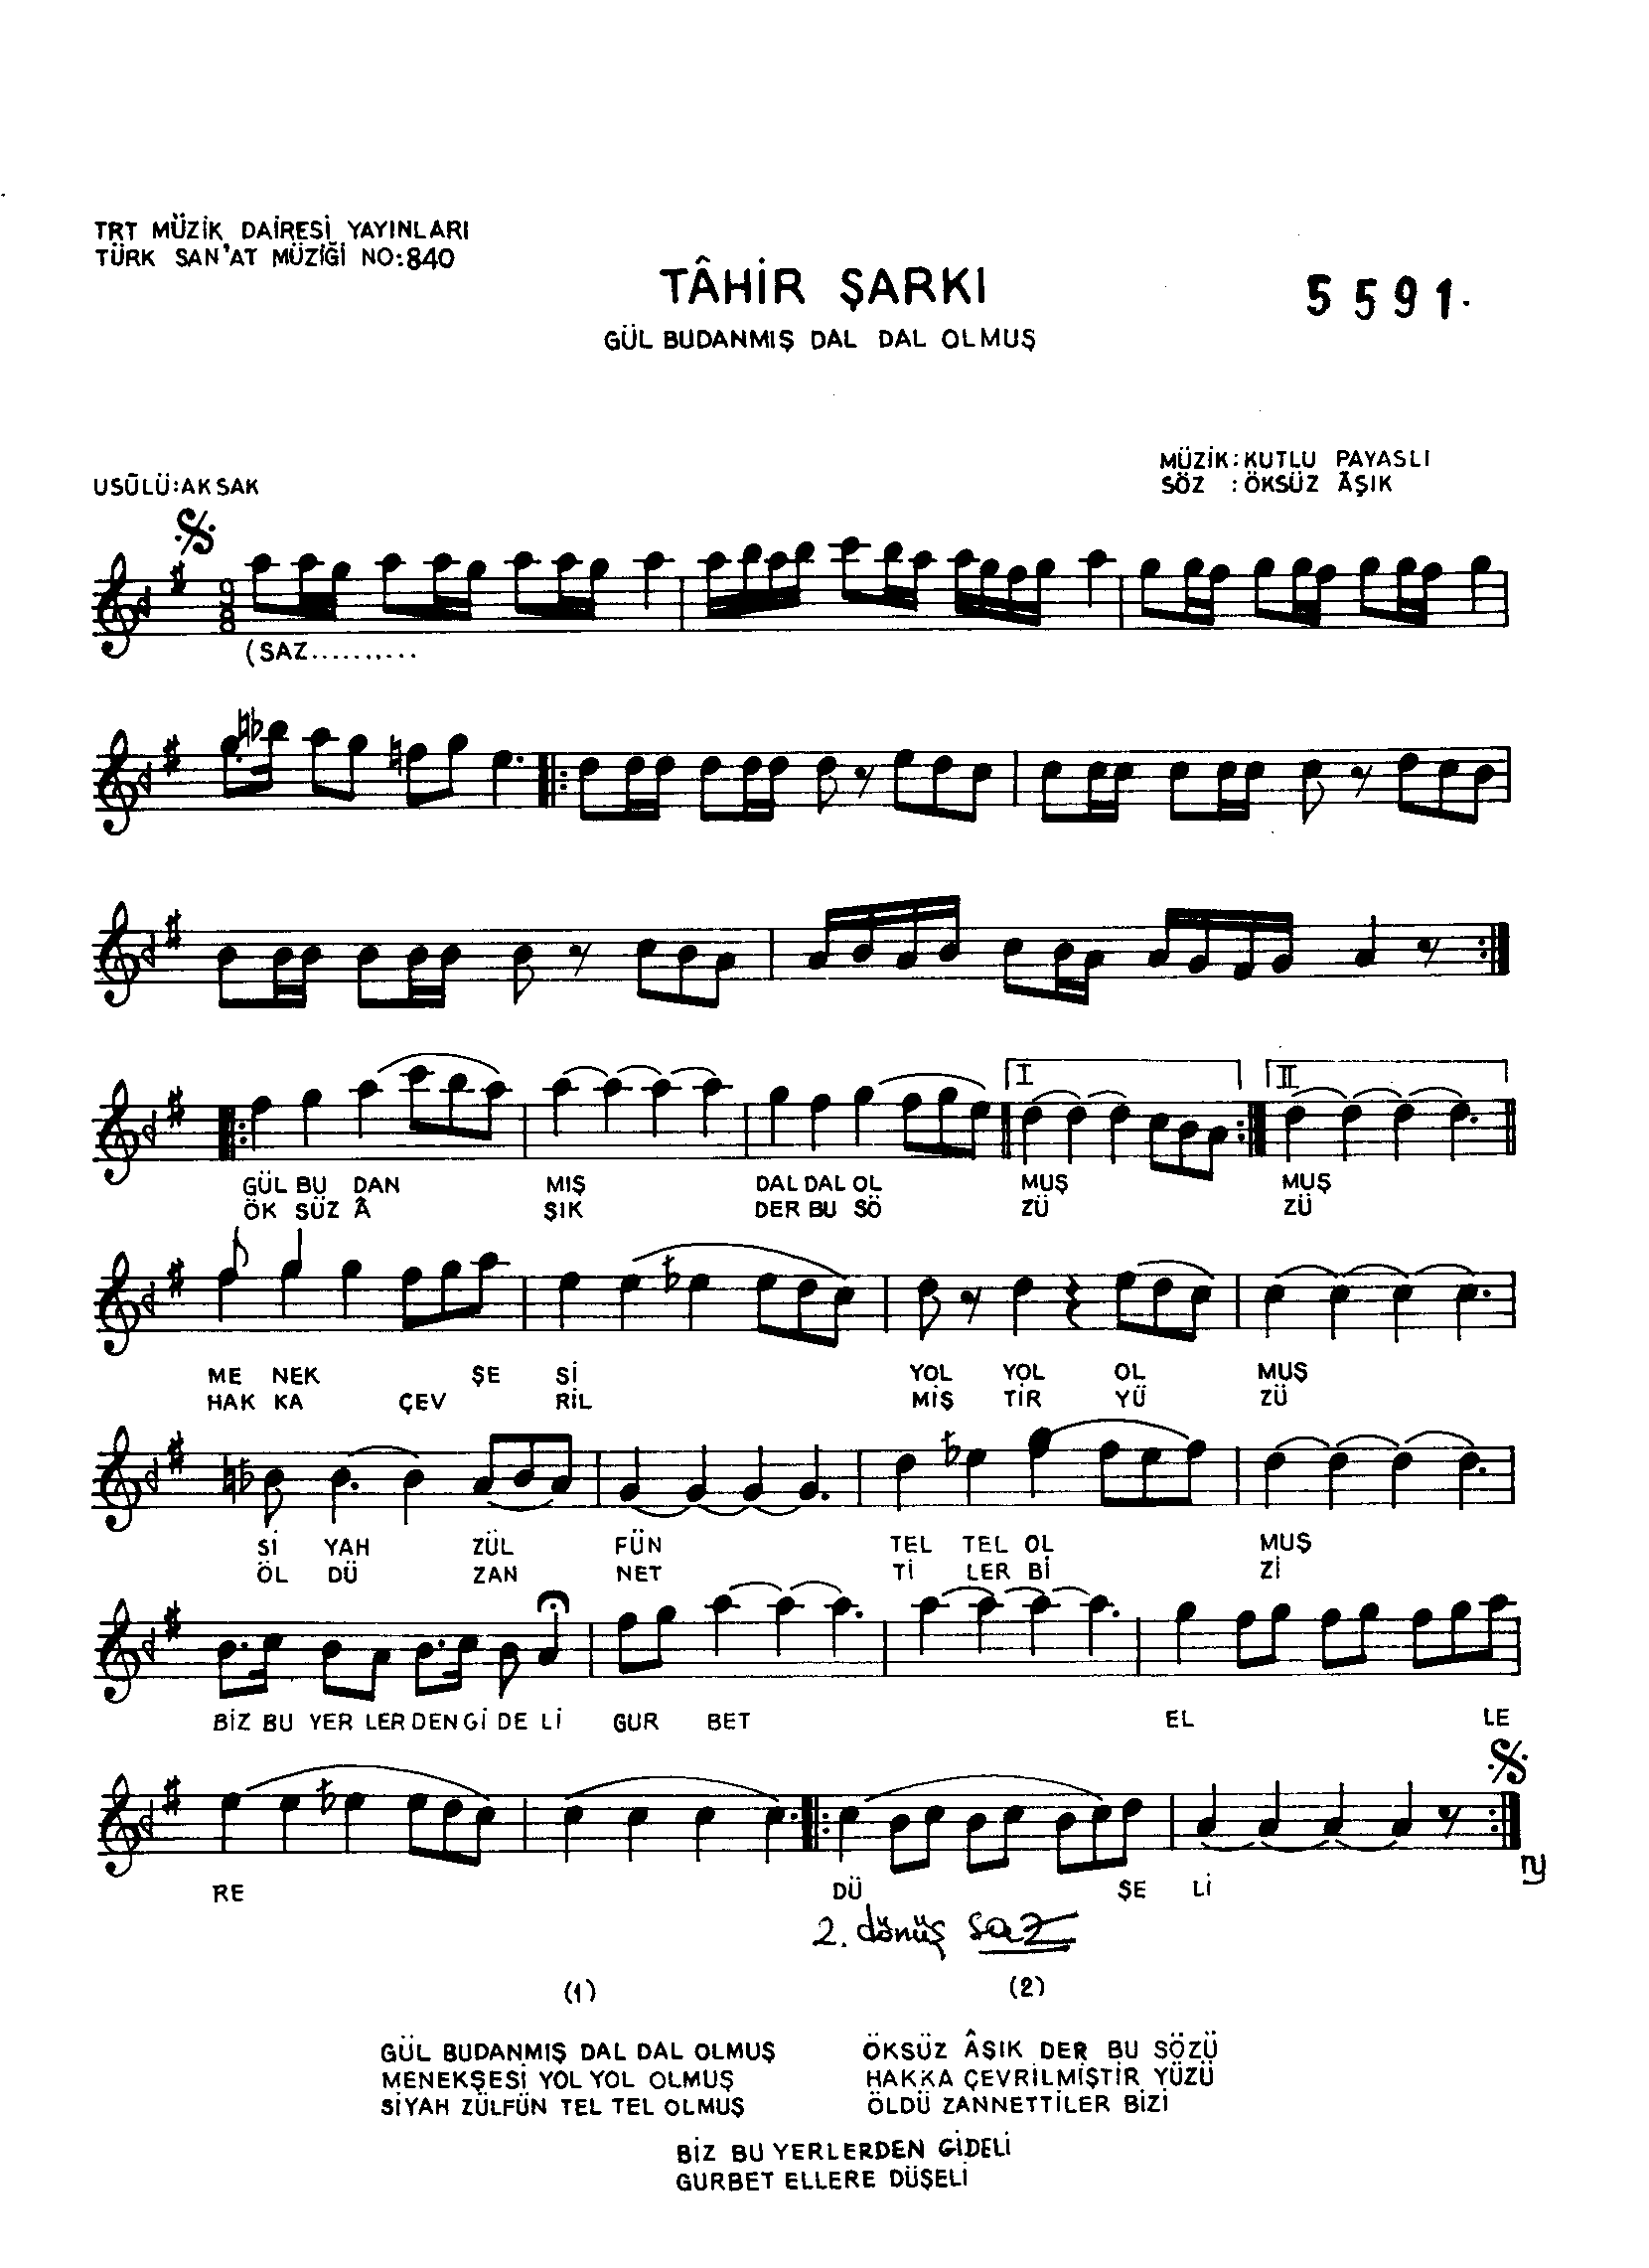 Tâhir - Şarkı - Kutlu Payaslı - Sayfa 1